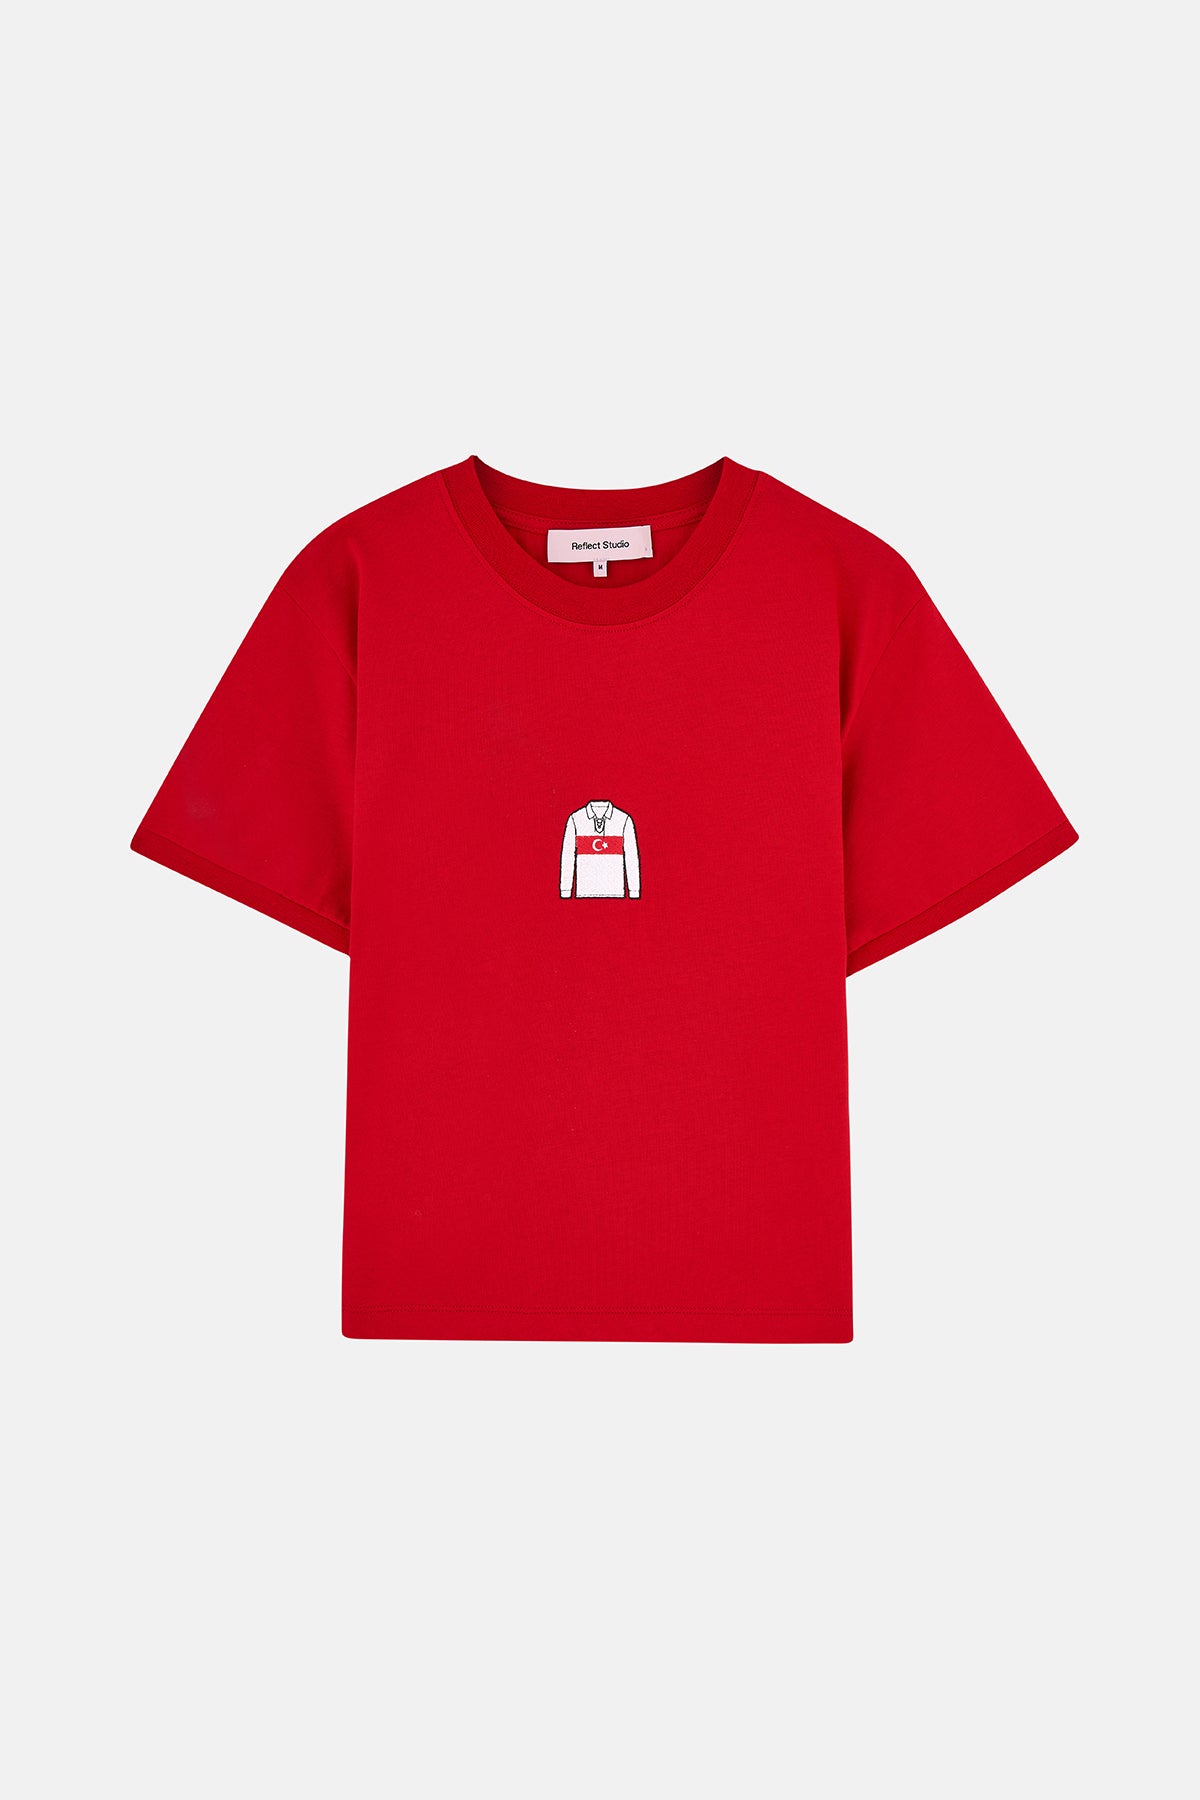 Türkiye Supreme Kadın T-shirt  - Kırmızı